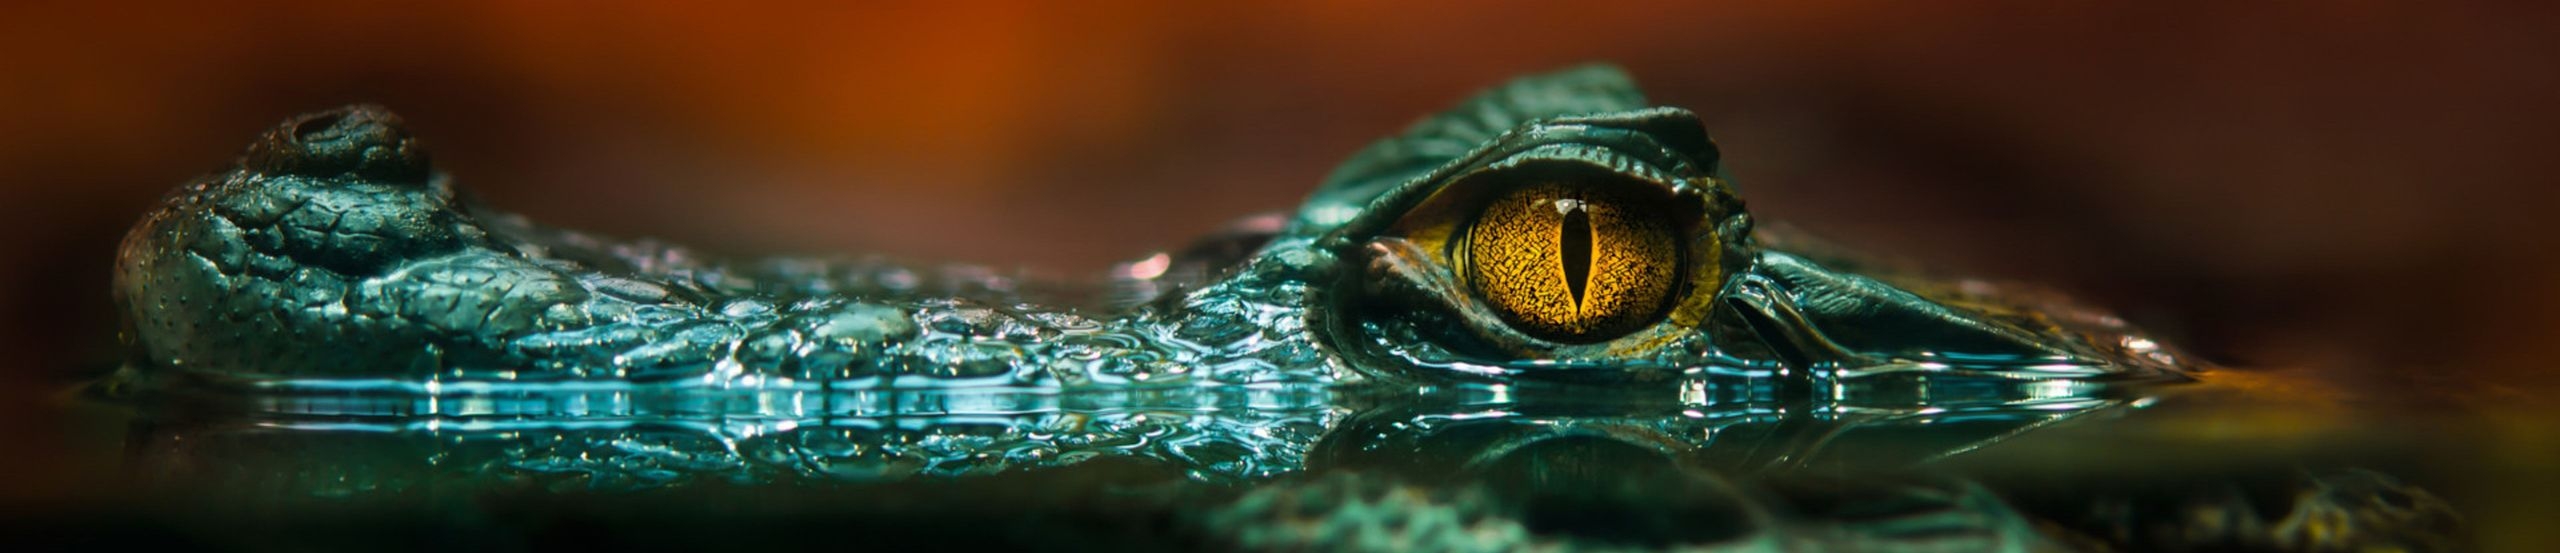 Der Kopf eines Krokodils ragt aus dem Wasser